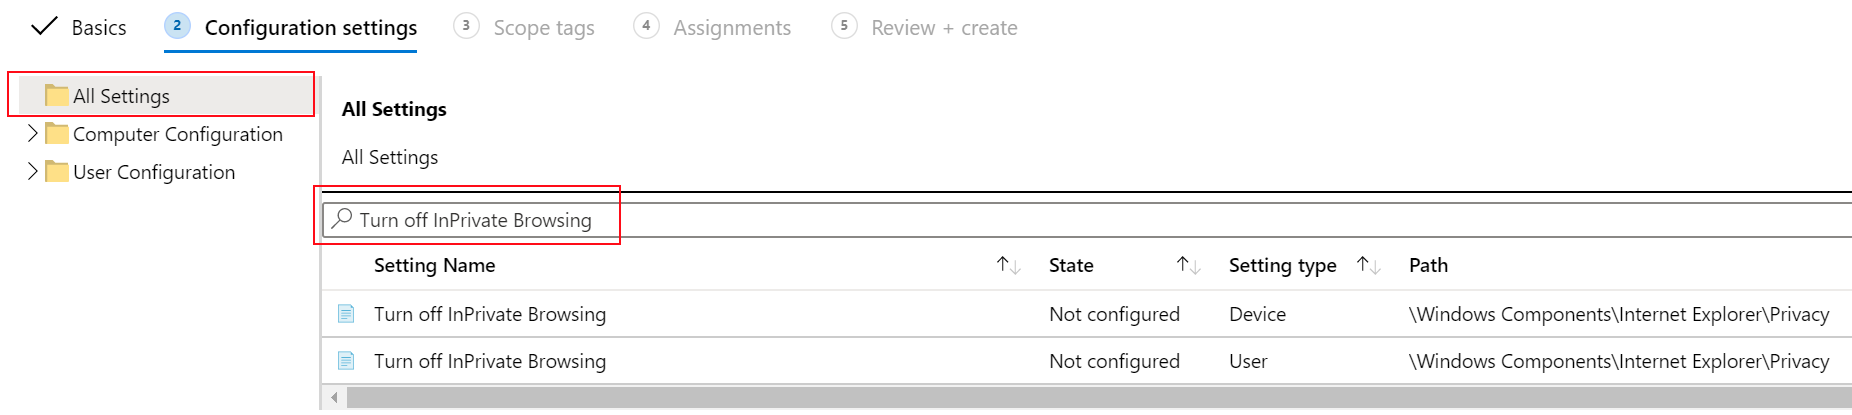 Снимок экрана, на котором показано, как отключить политику просмотра устройств InPrivate в административном шаблоне в Microsoft Intune.